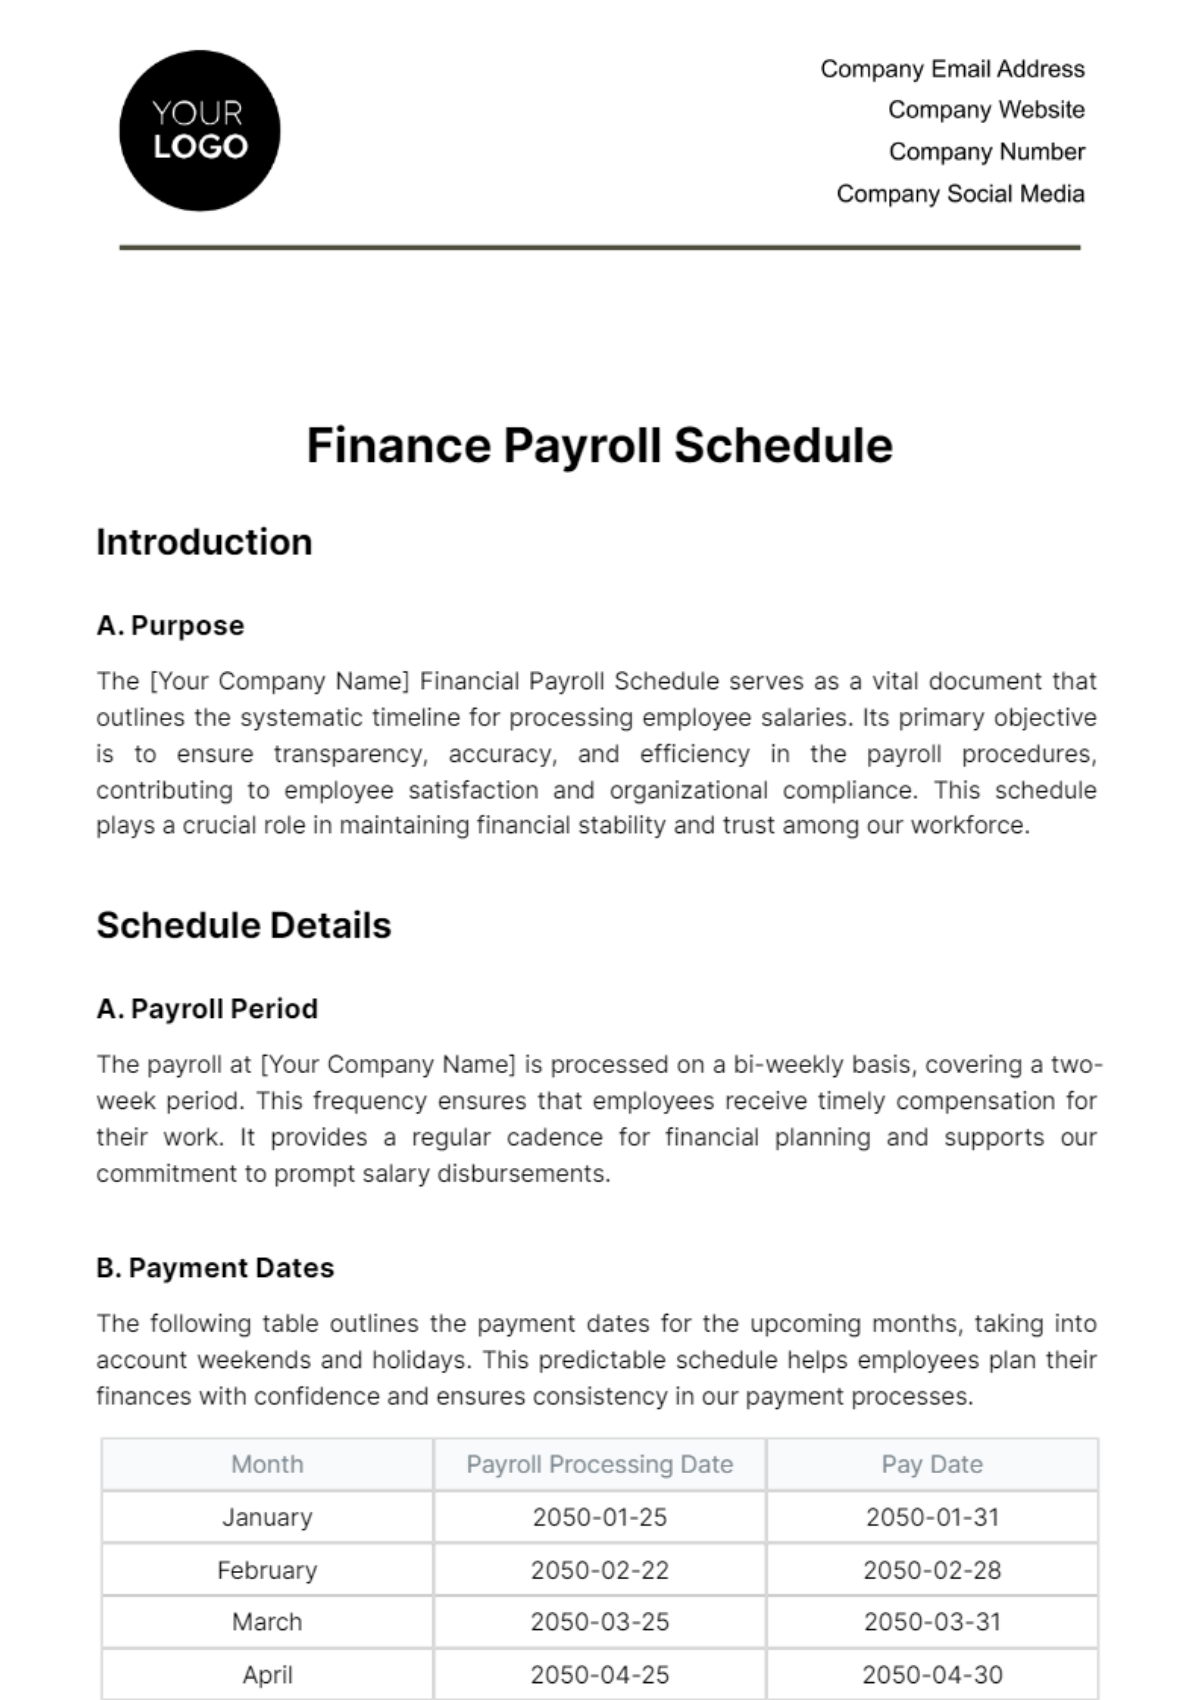 Finance Payroll Schedule Template